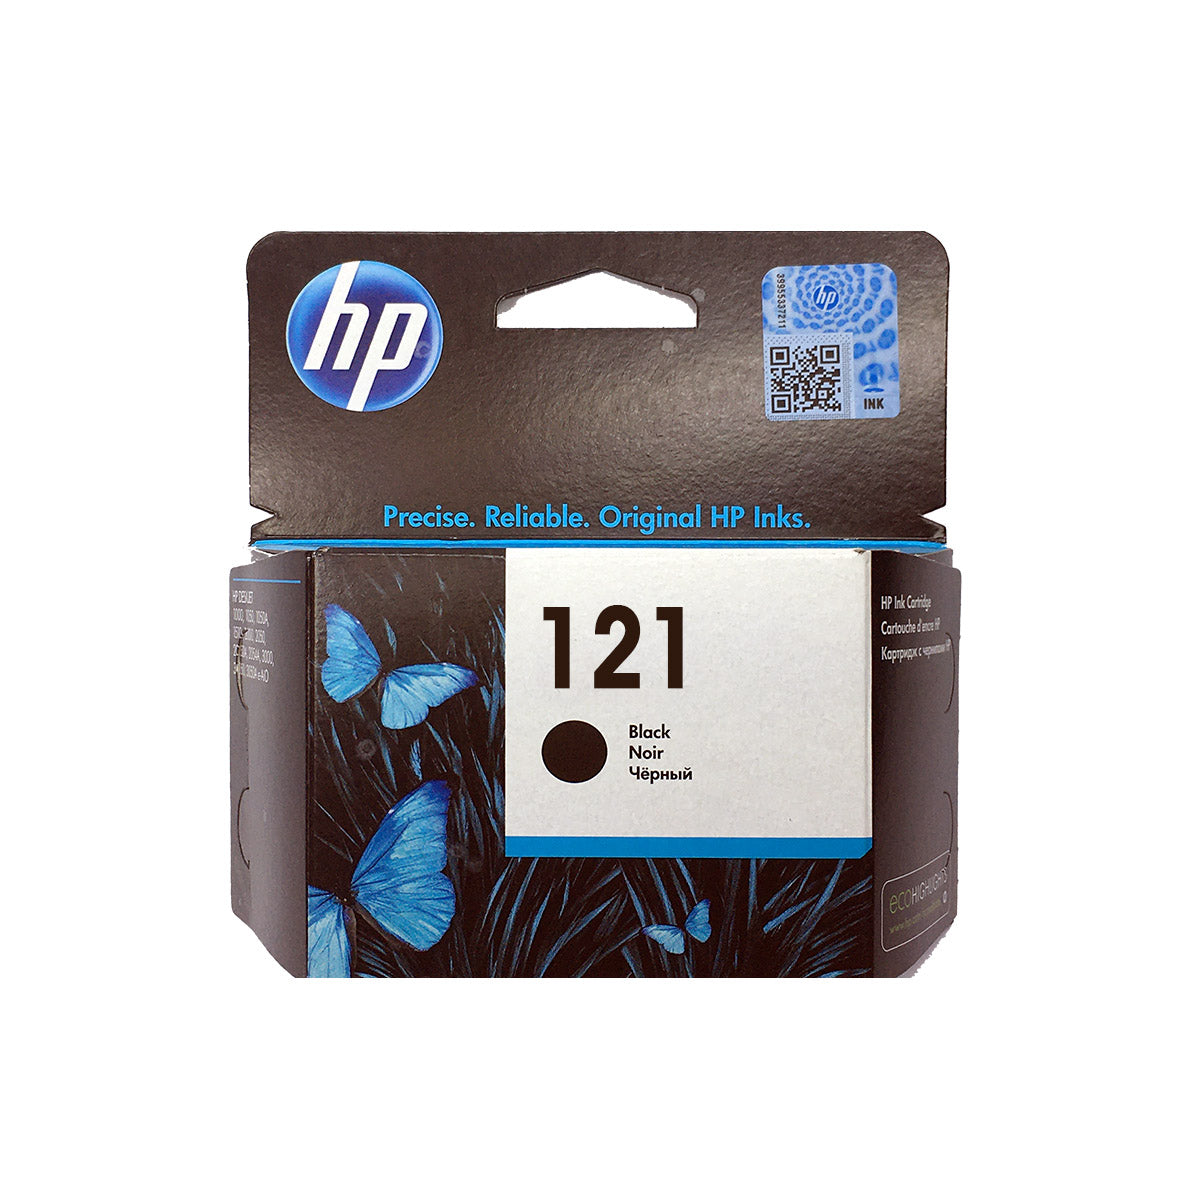 Shop HP 121 Original Ink Cartridge Black Color online in Abu Dhabi, UAE